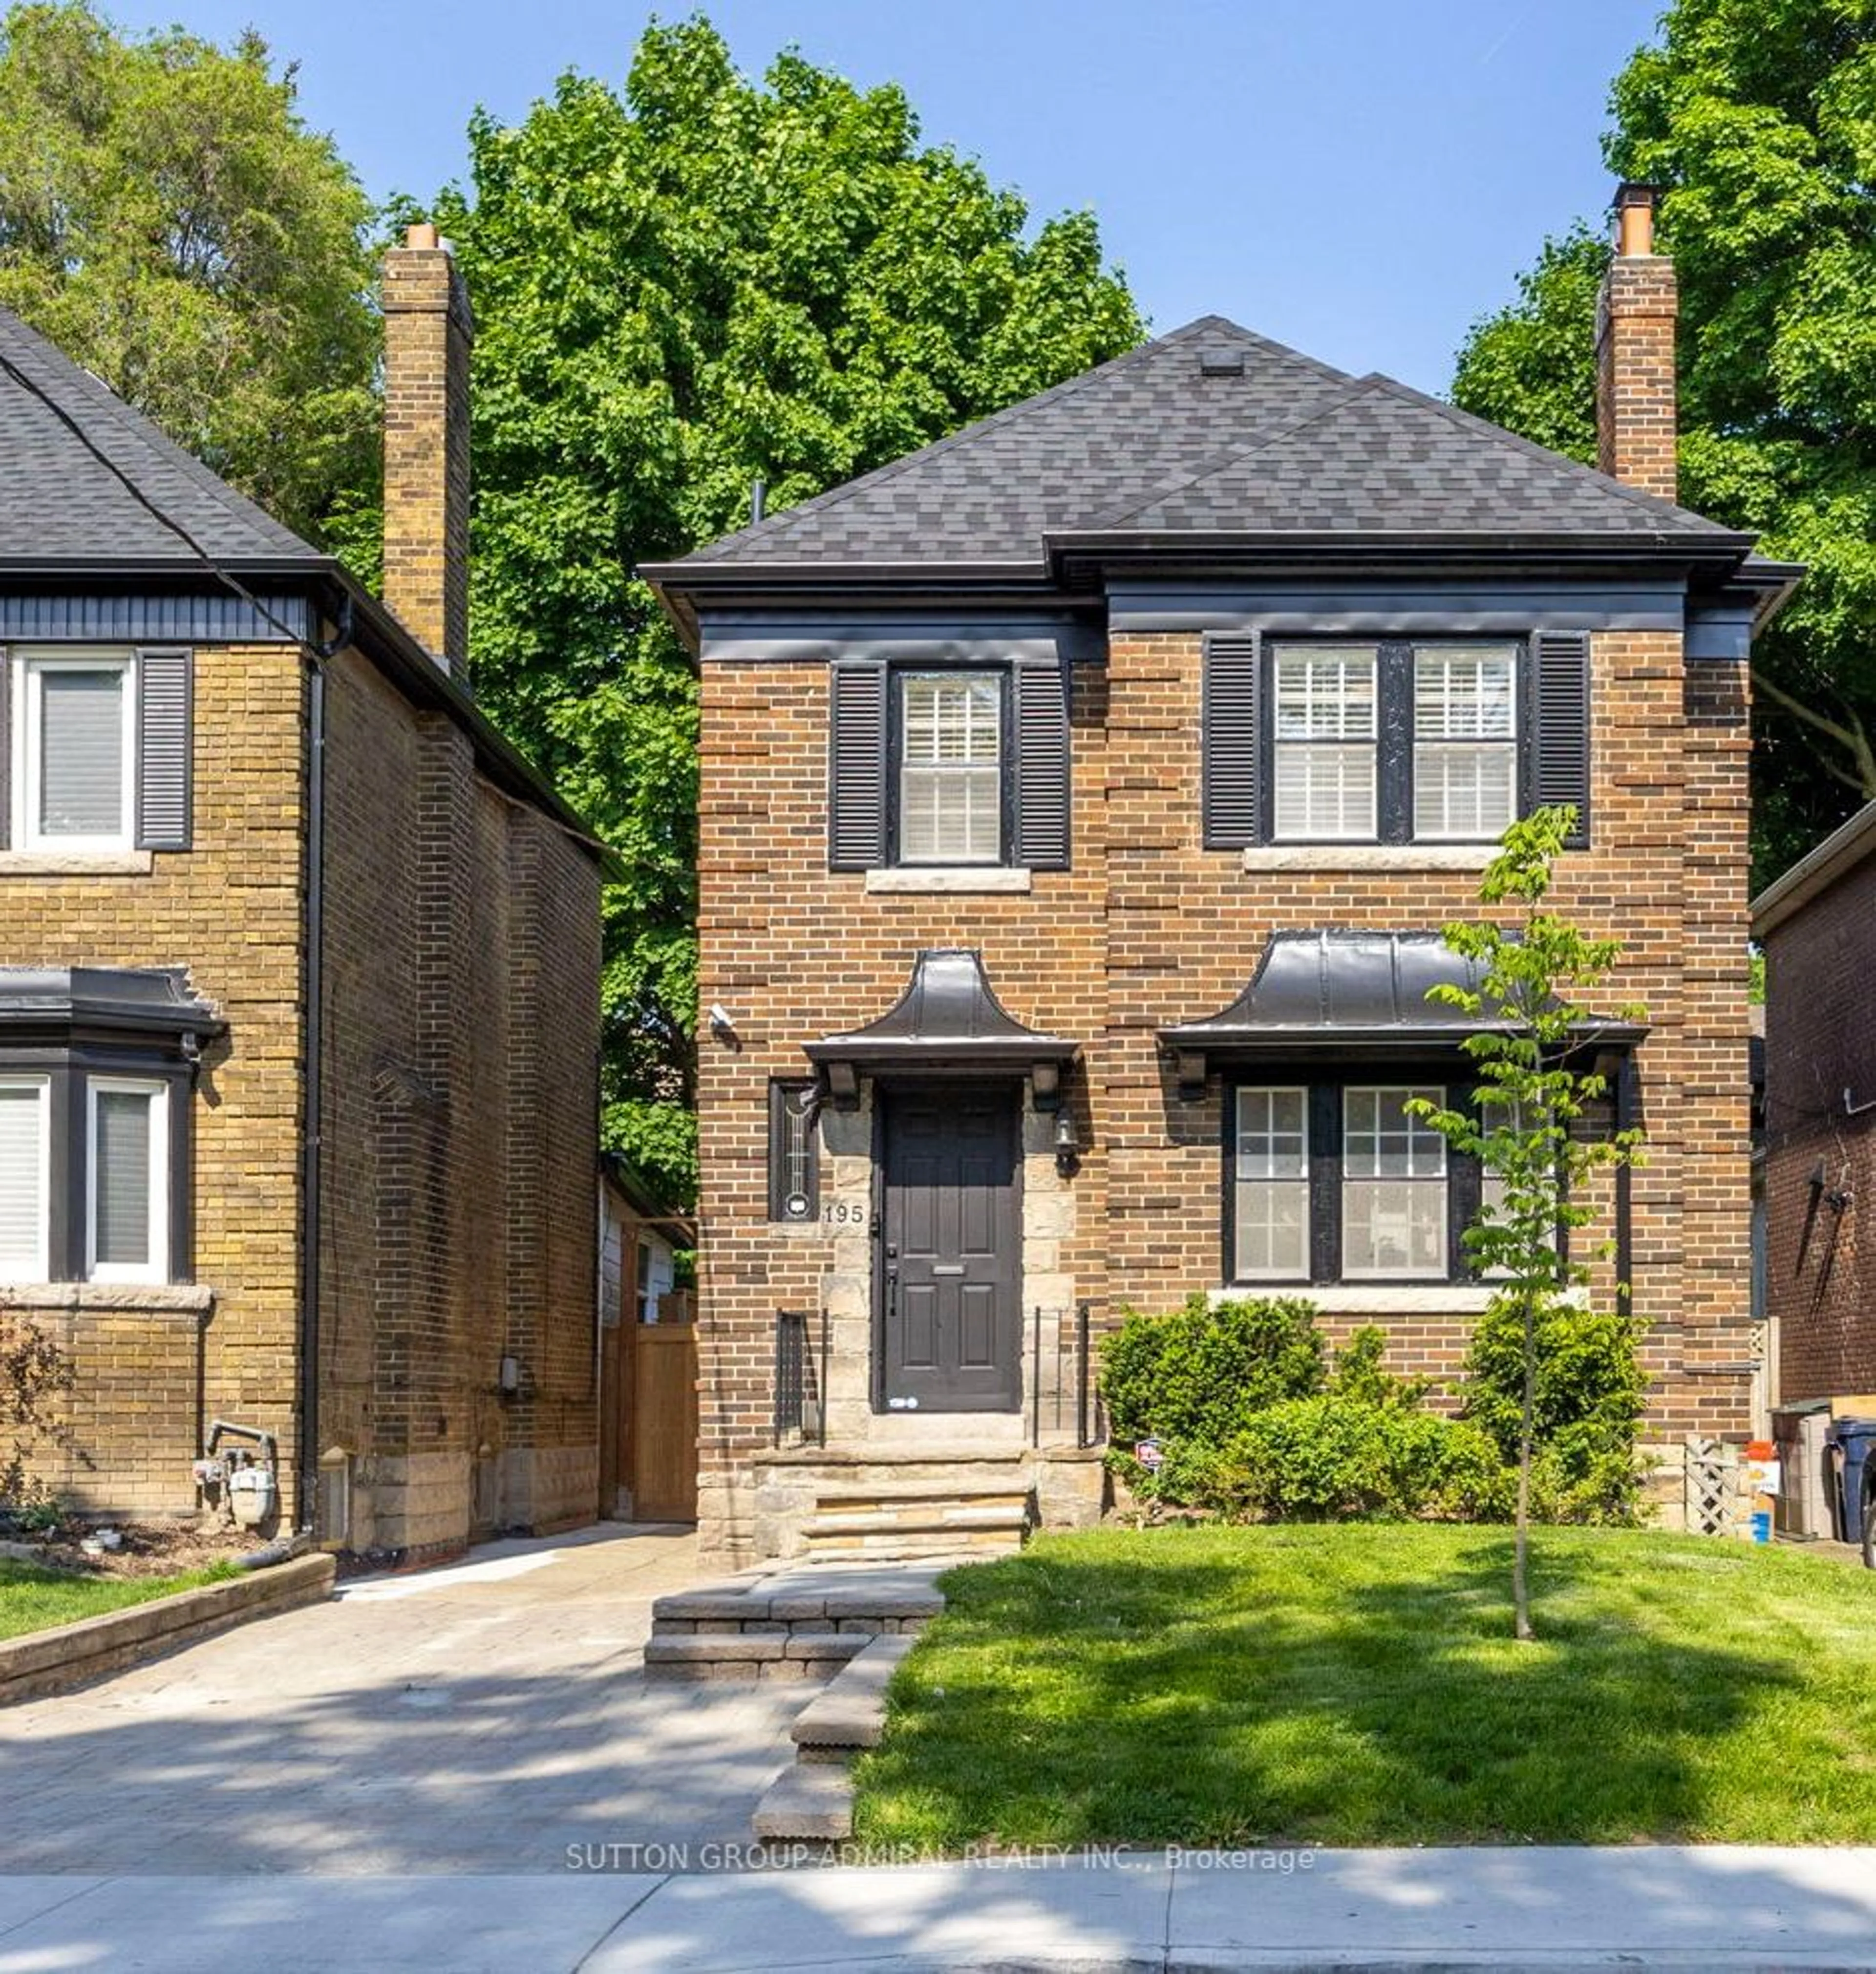 Home with brick exterior material for 195 Glen Cedar Rd, Toronto Ontario M6C 3G9